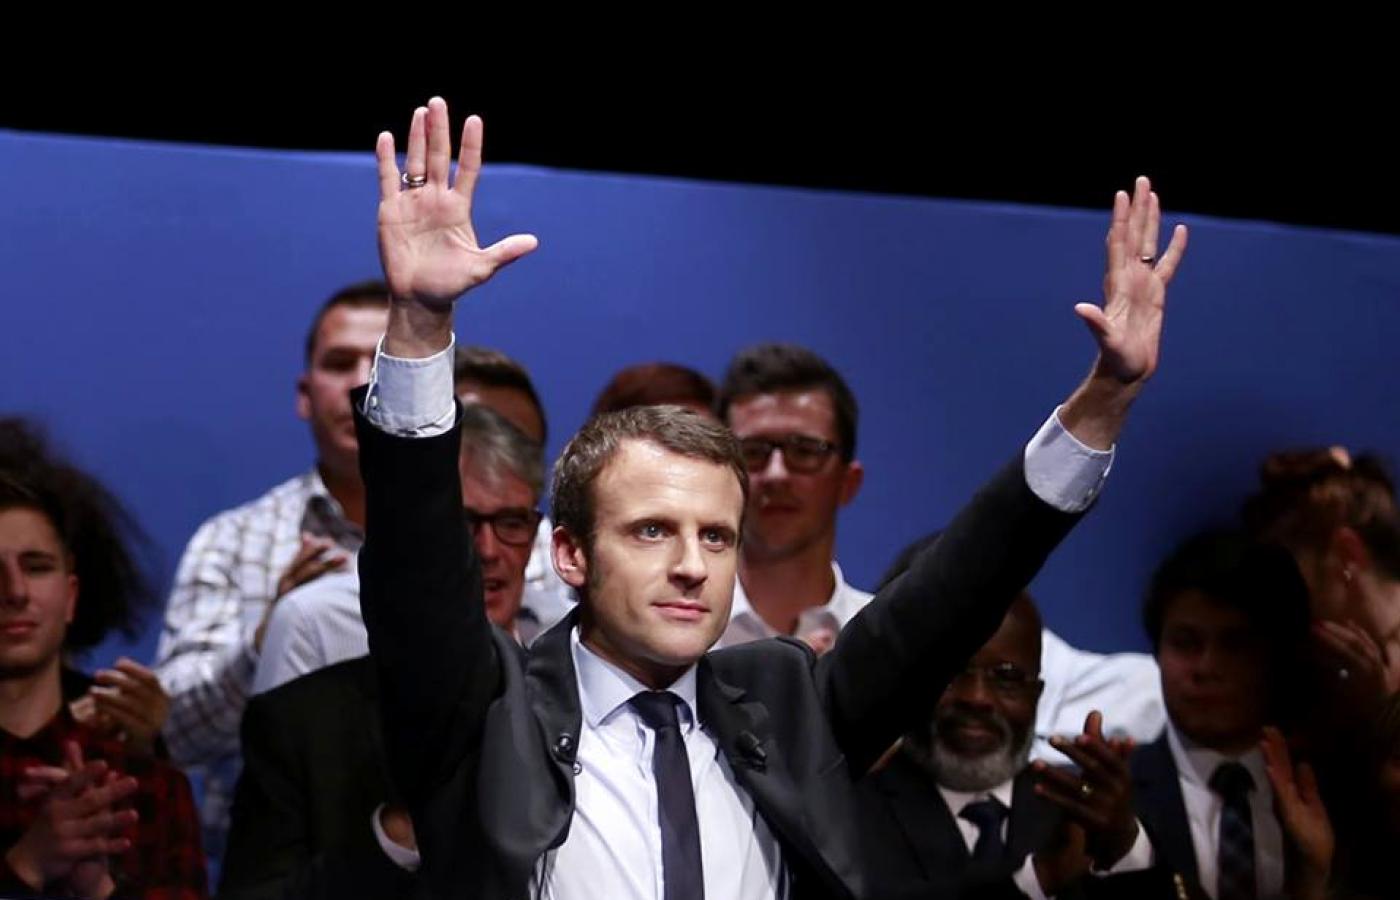 Macron uzyskał 66,06 proc. oddanych głosów, podczas gdy jego rywalka Marine Le Pen zdobyła 33,94 proc.